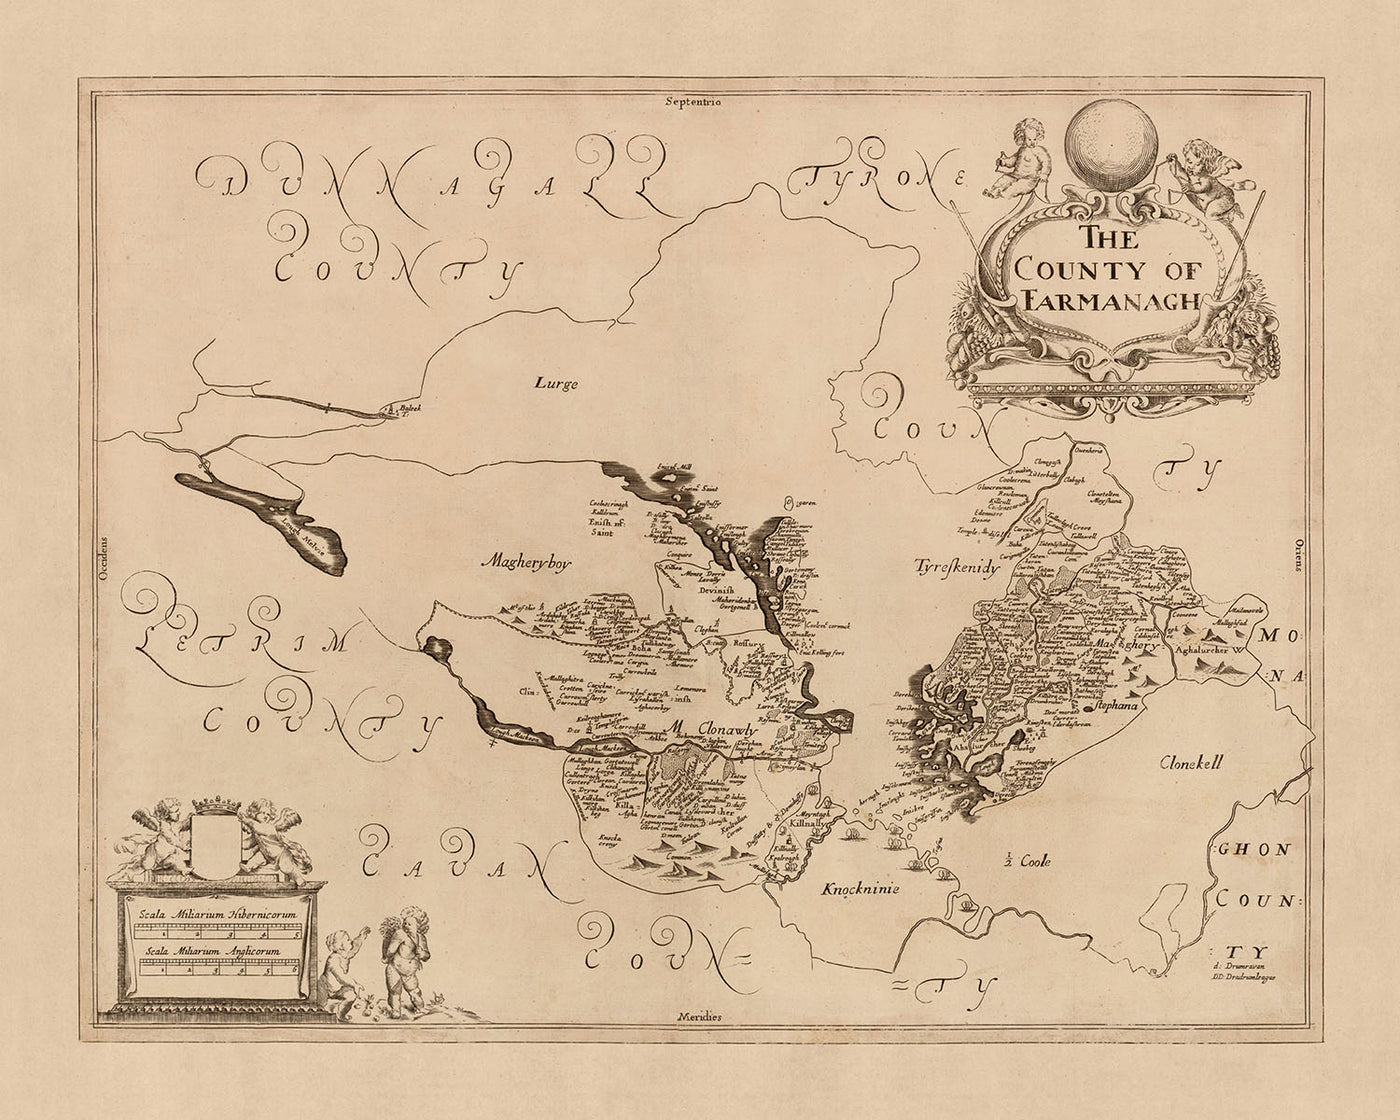 Alte Karte der Grafschaft Fermanagh von Petty, 1685: Enniskillen, Castle Coole, Crom Estate, Florence Court, Lough Erne